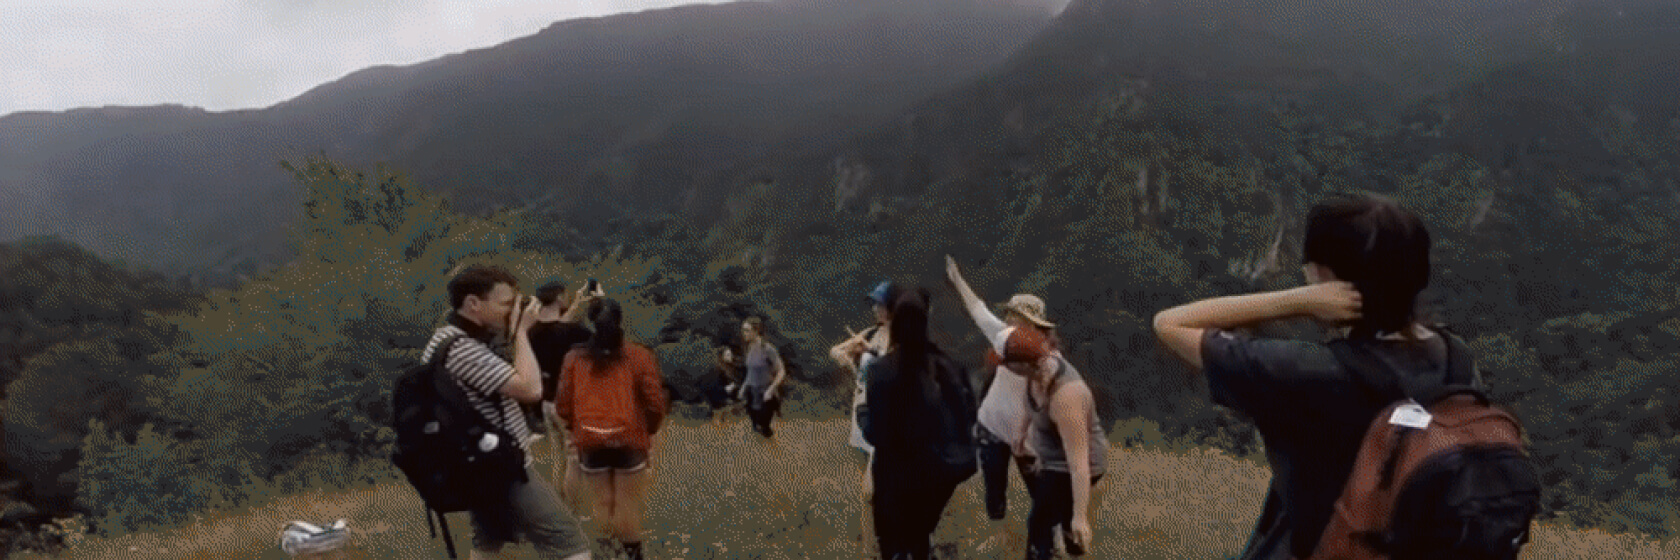 学生团体徒步穿越山谷。